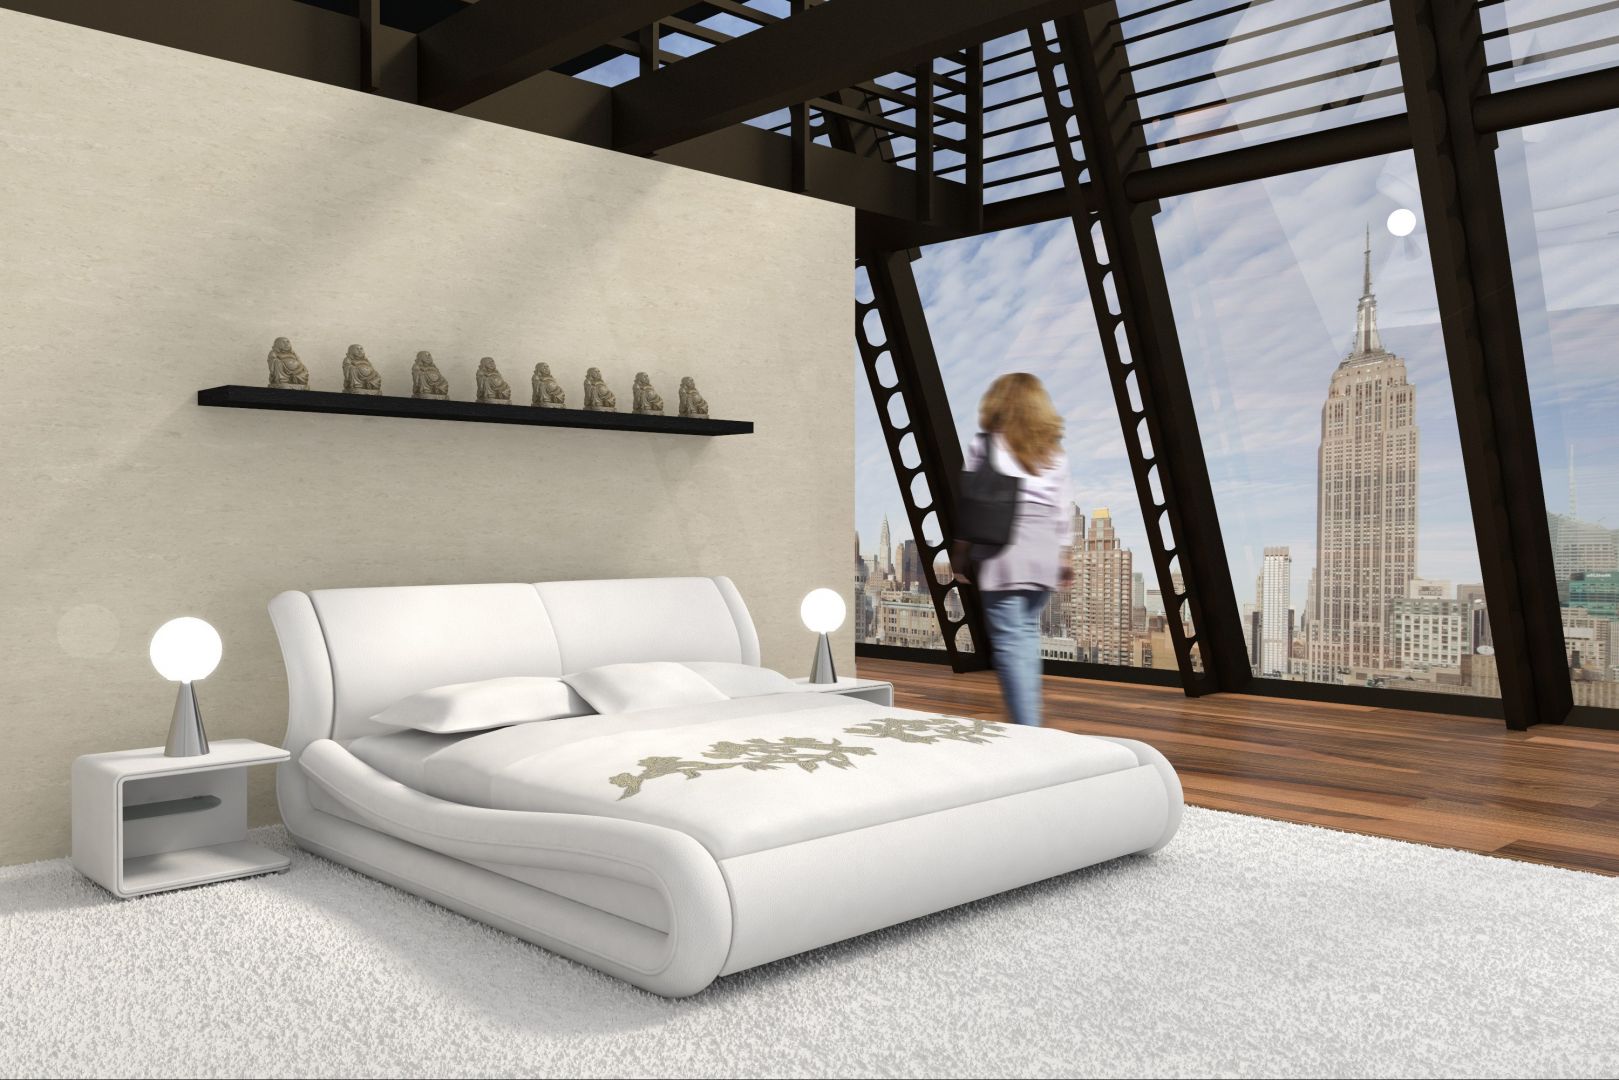 Obłe kształty sprawiają, że łóżko wygląda na bardzo przytulne. Fot. ARM Po Prostu Łóżka